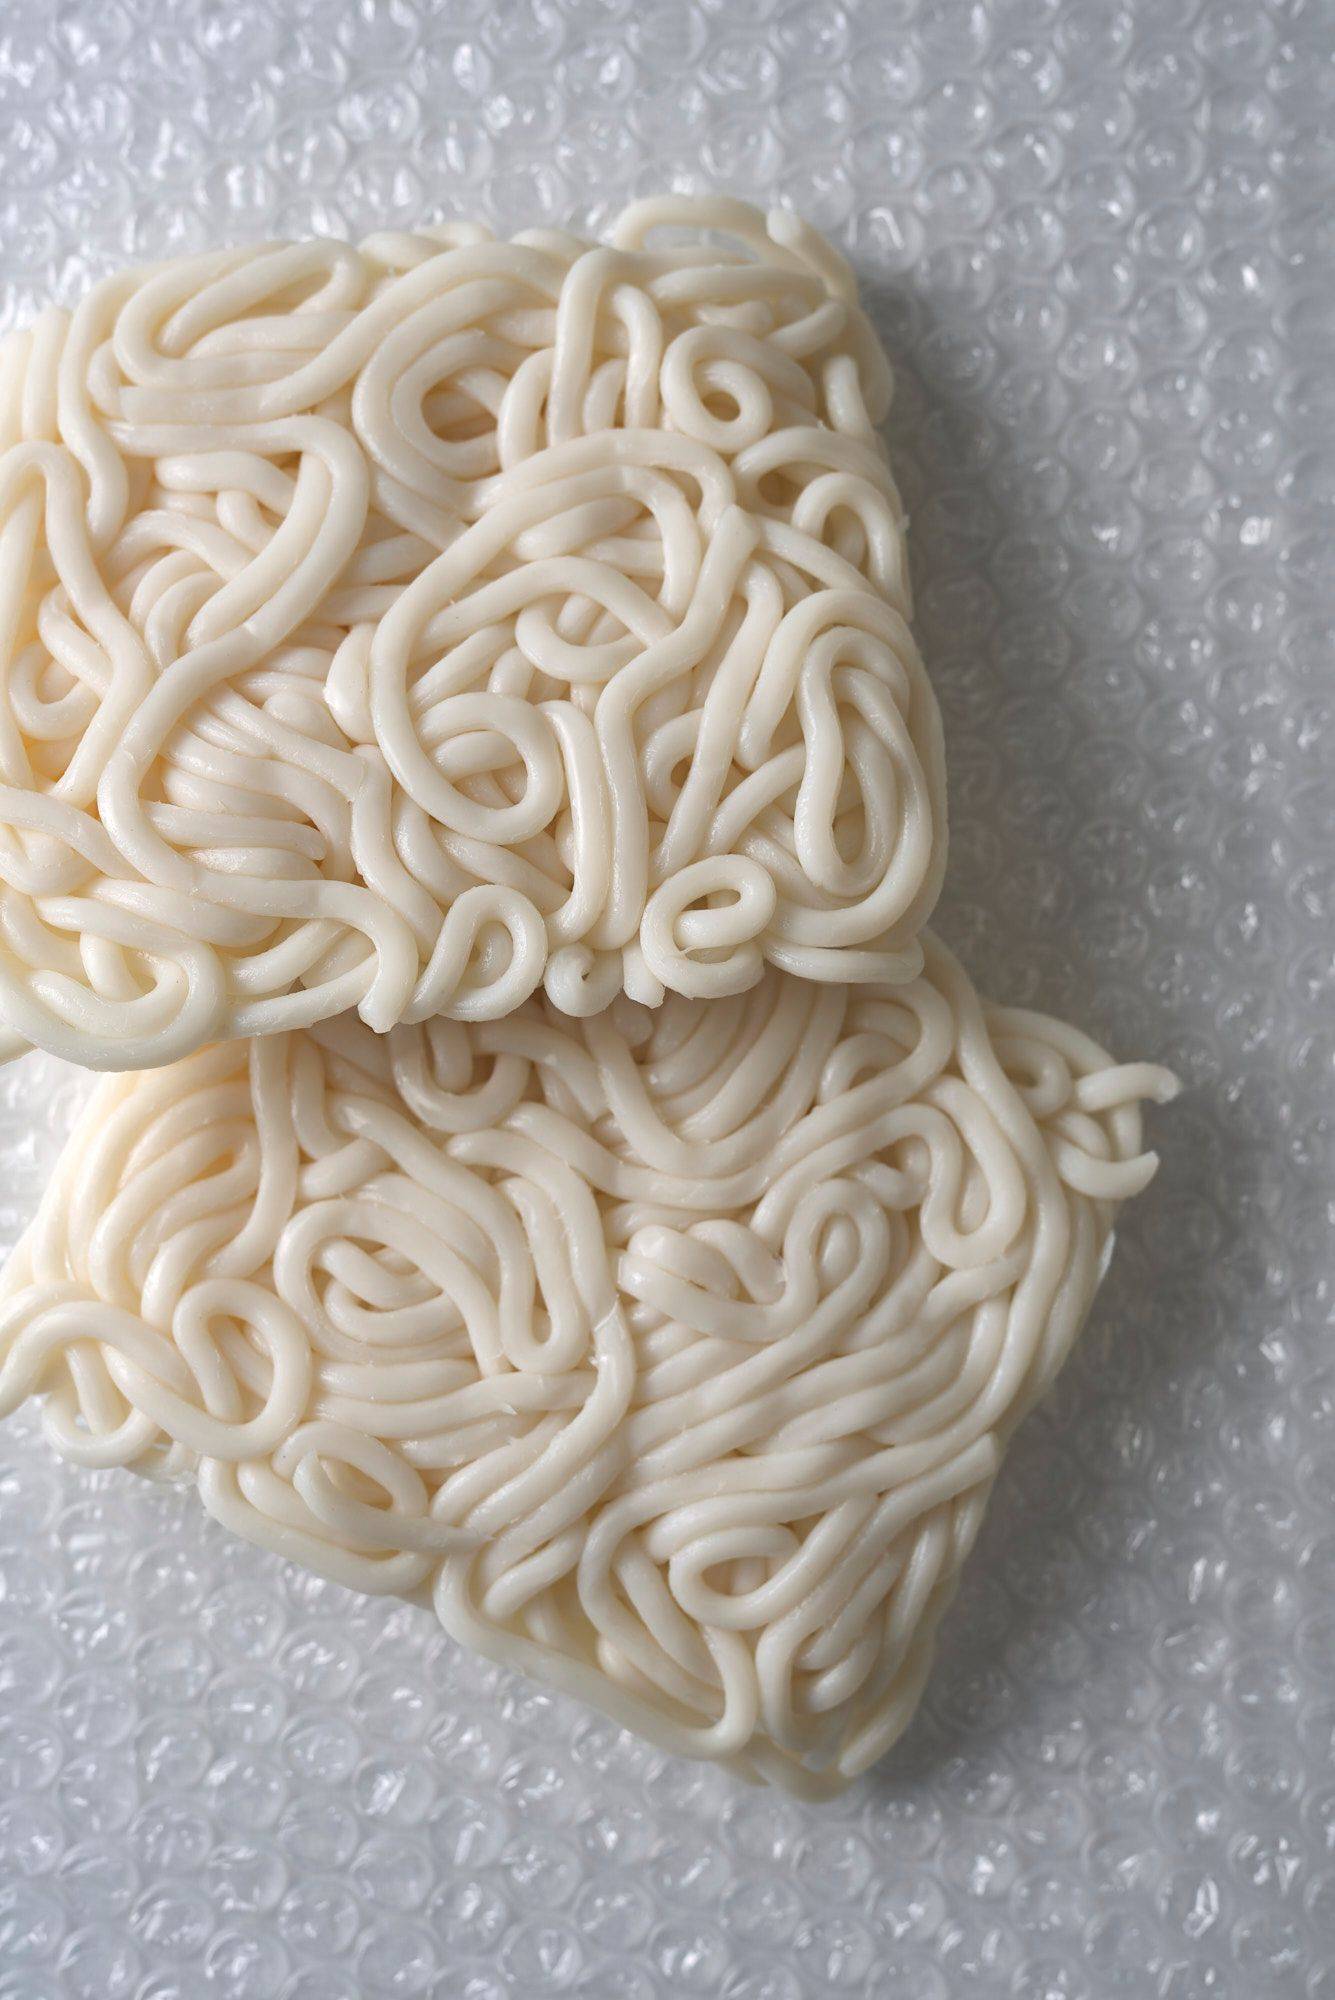 raw udon noodles on plastic foil